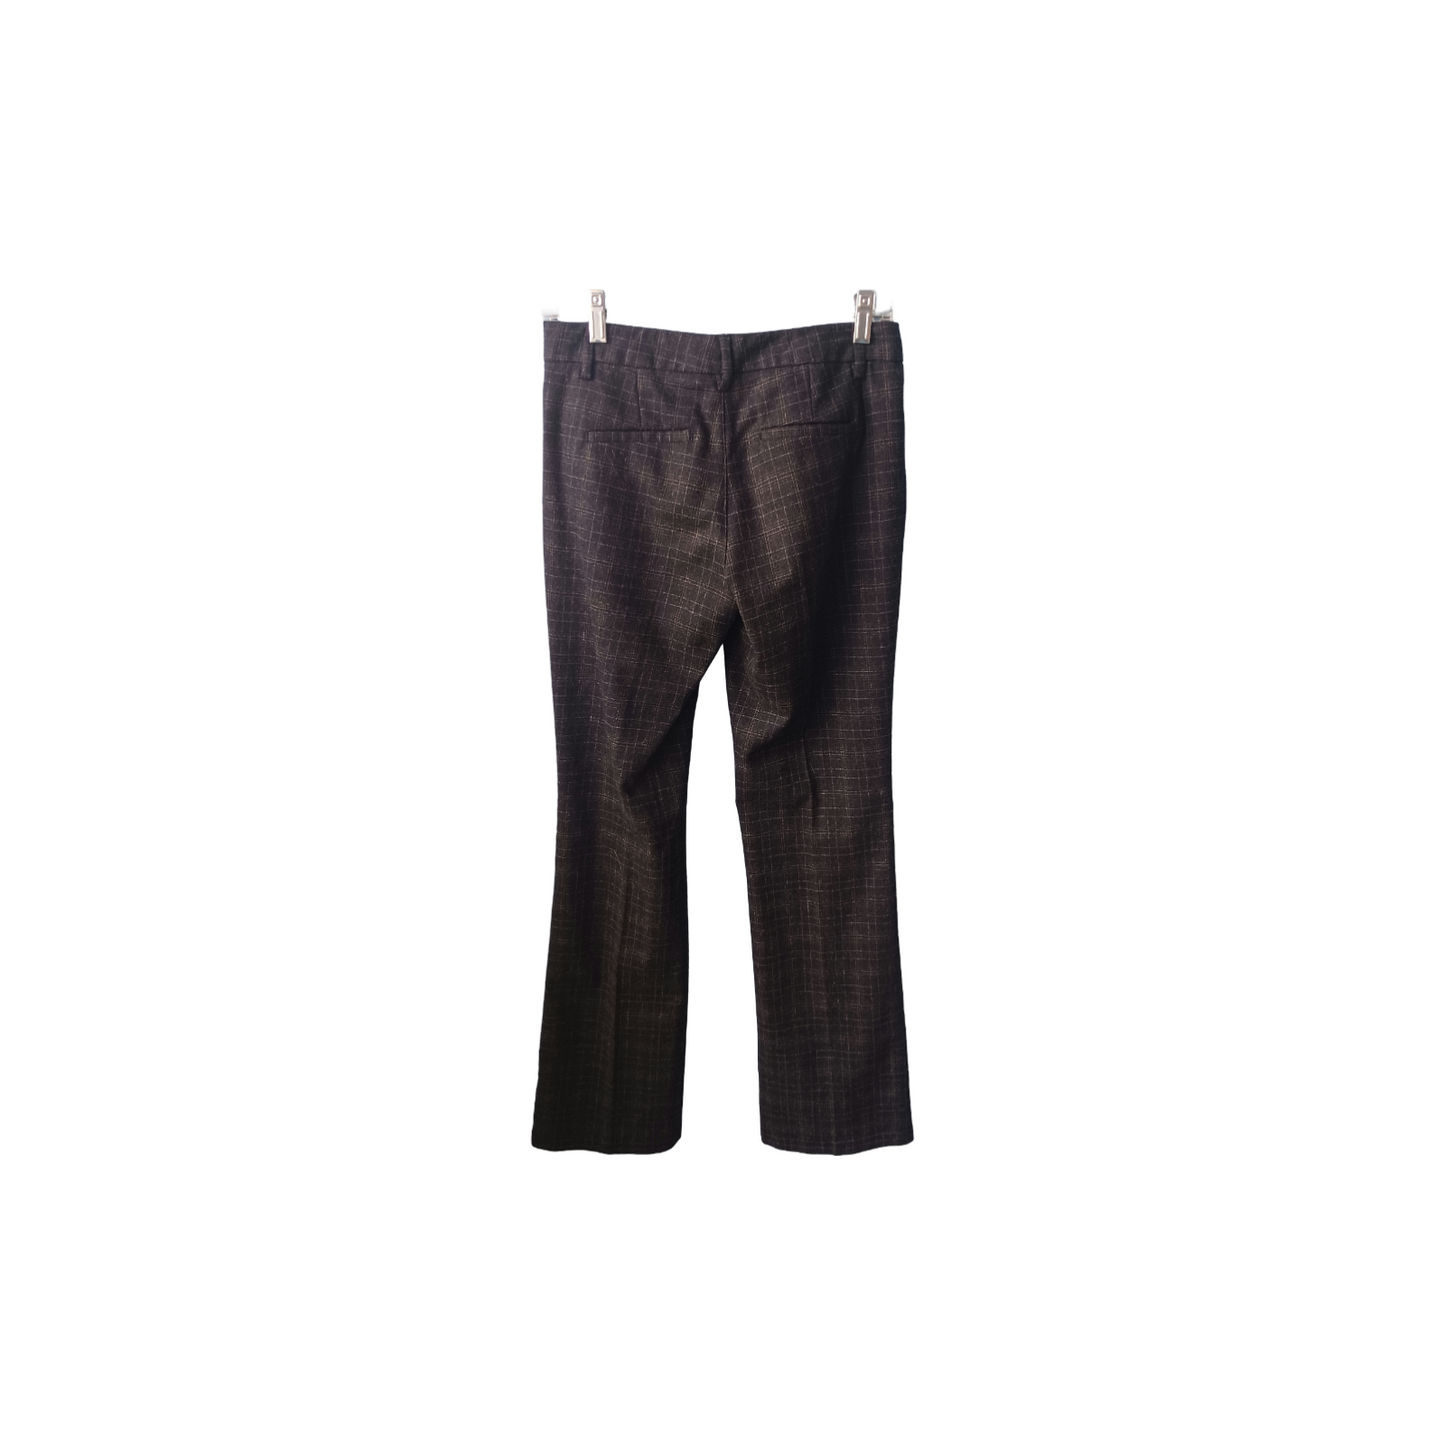 Stile Benetton Charcoal Plaid Pants, Size 38